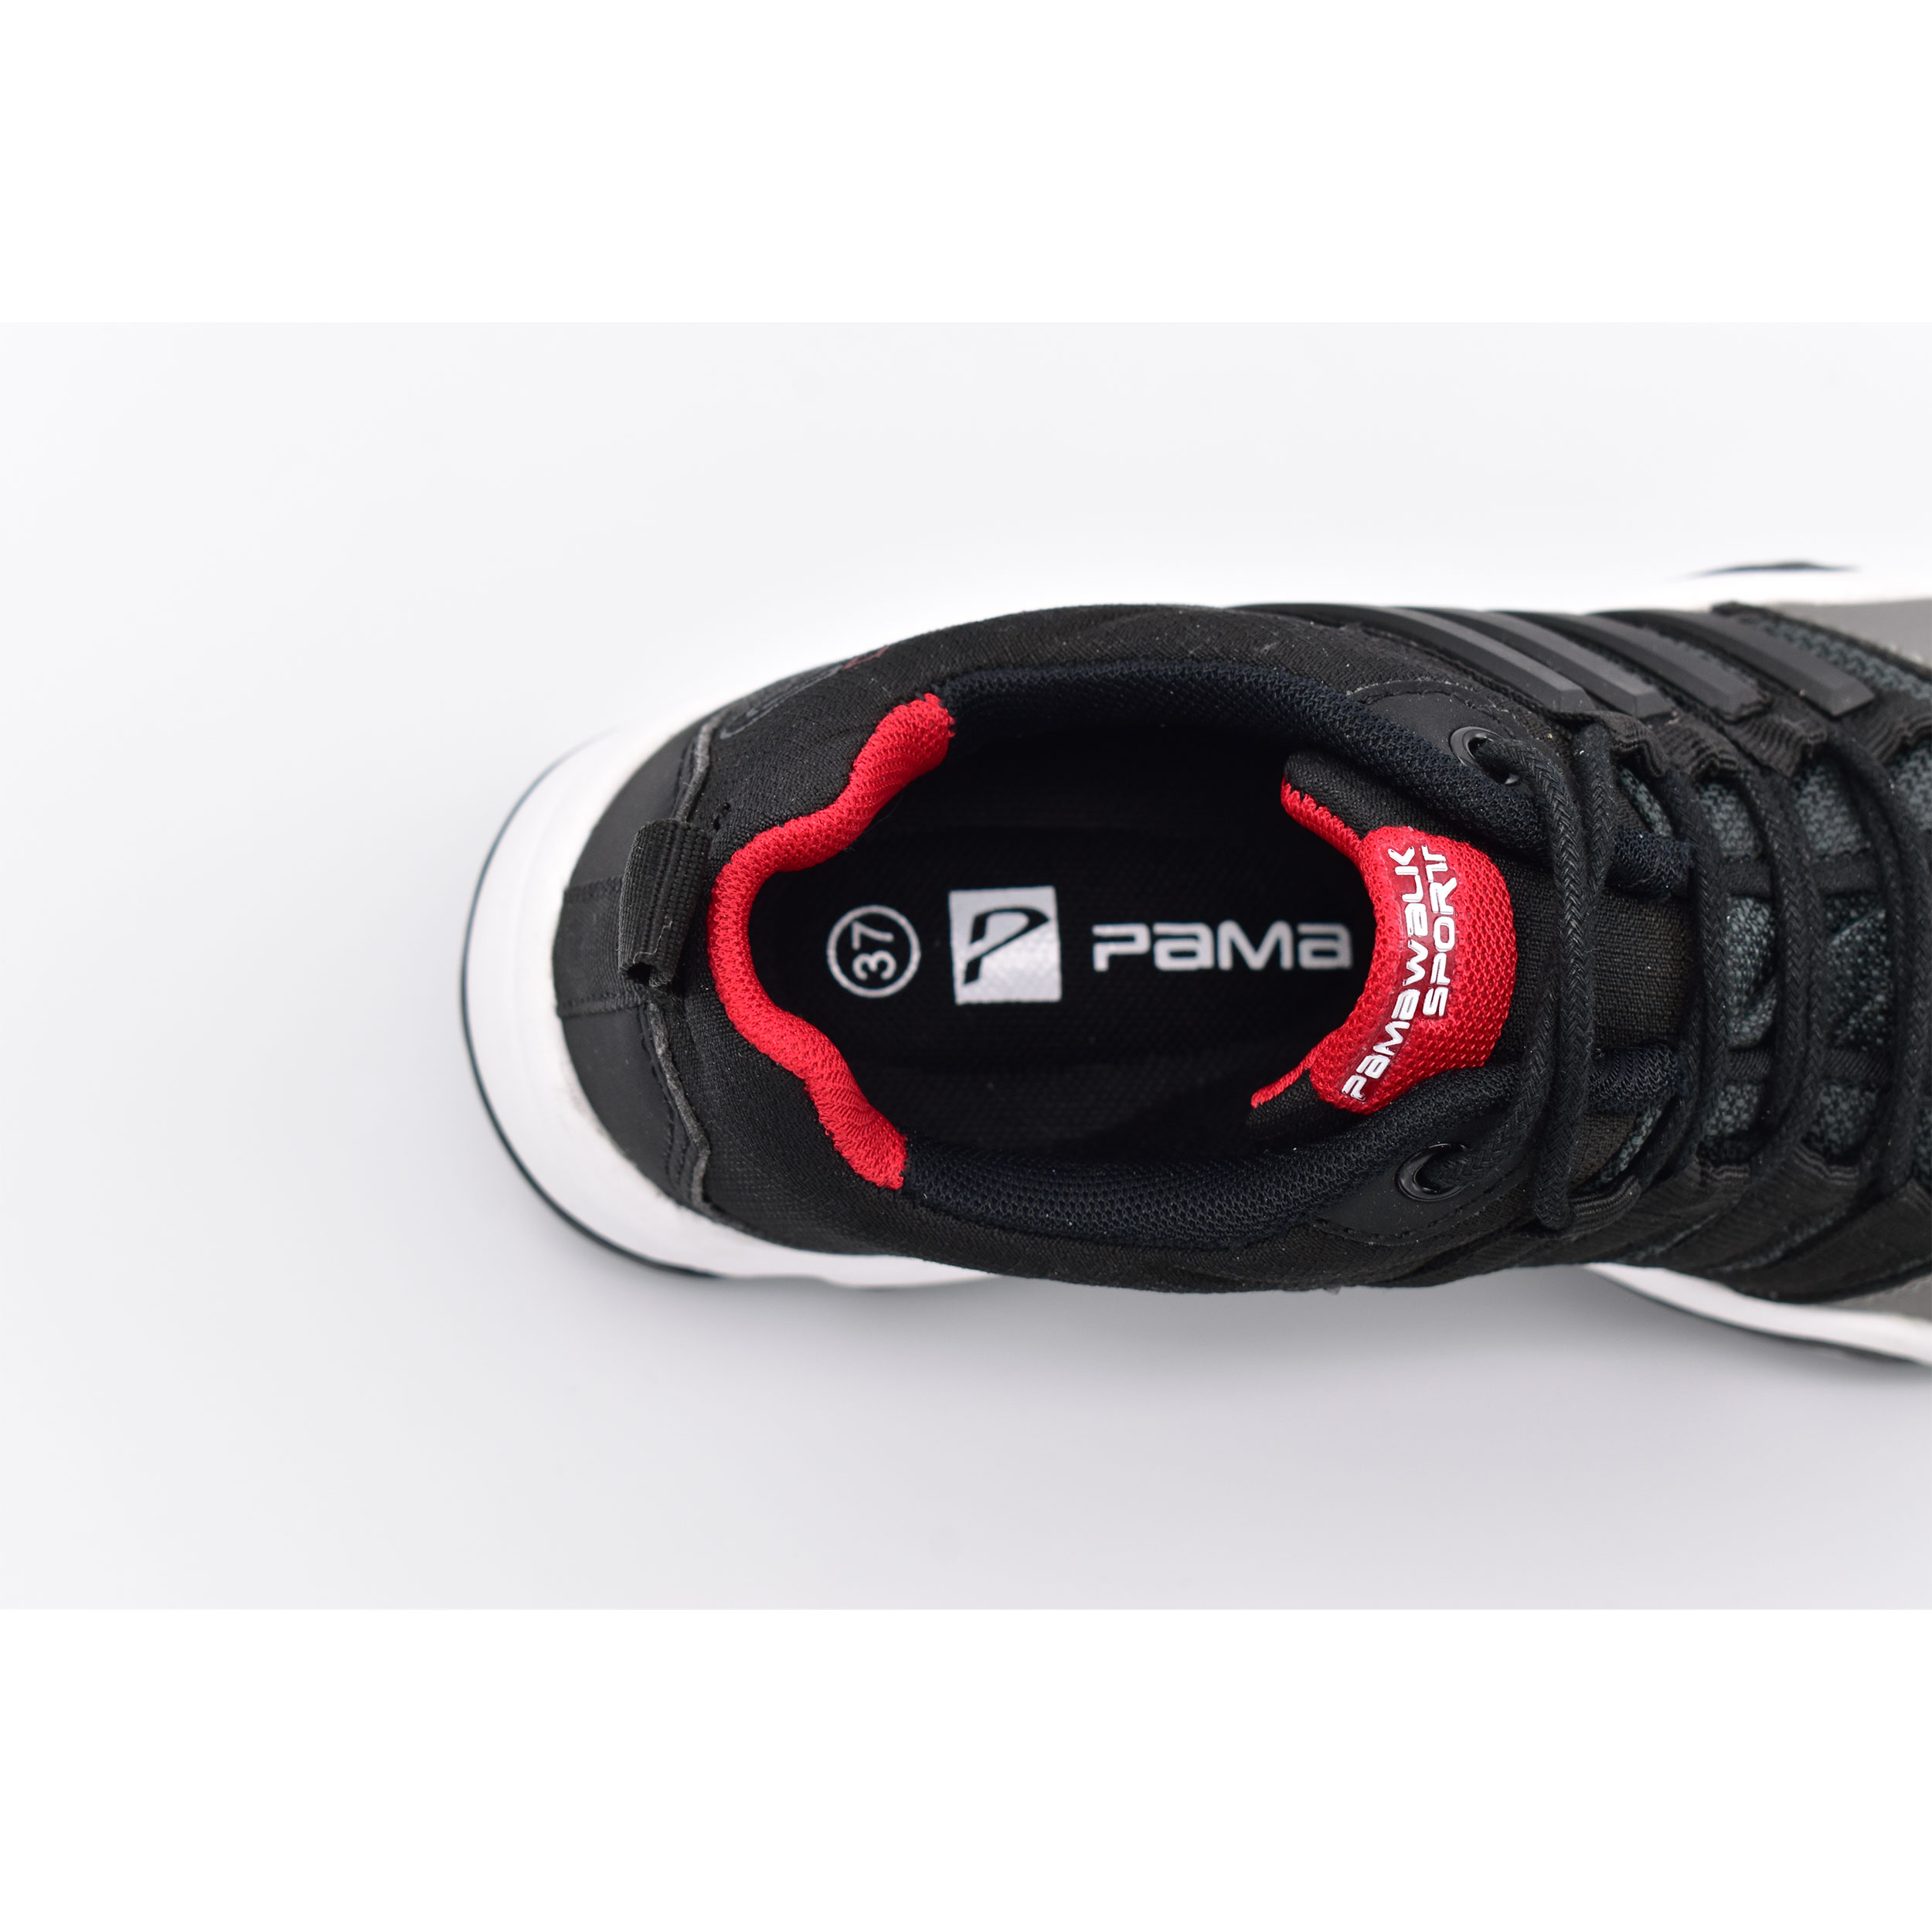 کفش پیاده روی زنانه پاما مدل PX2 کد G1735 -  - 9